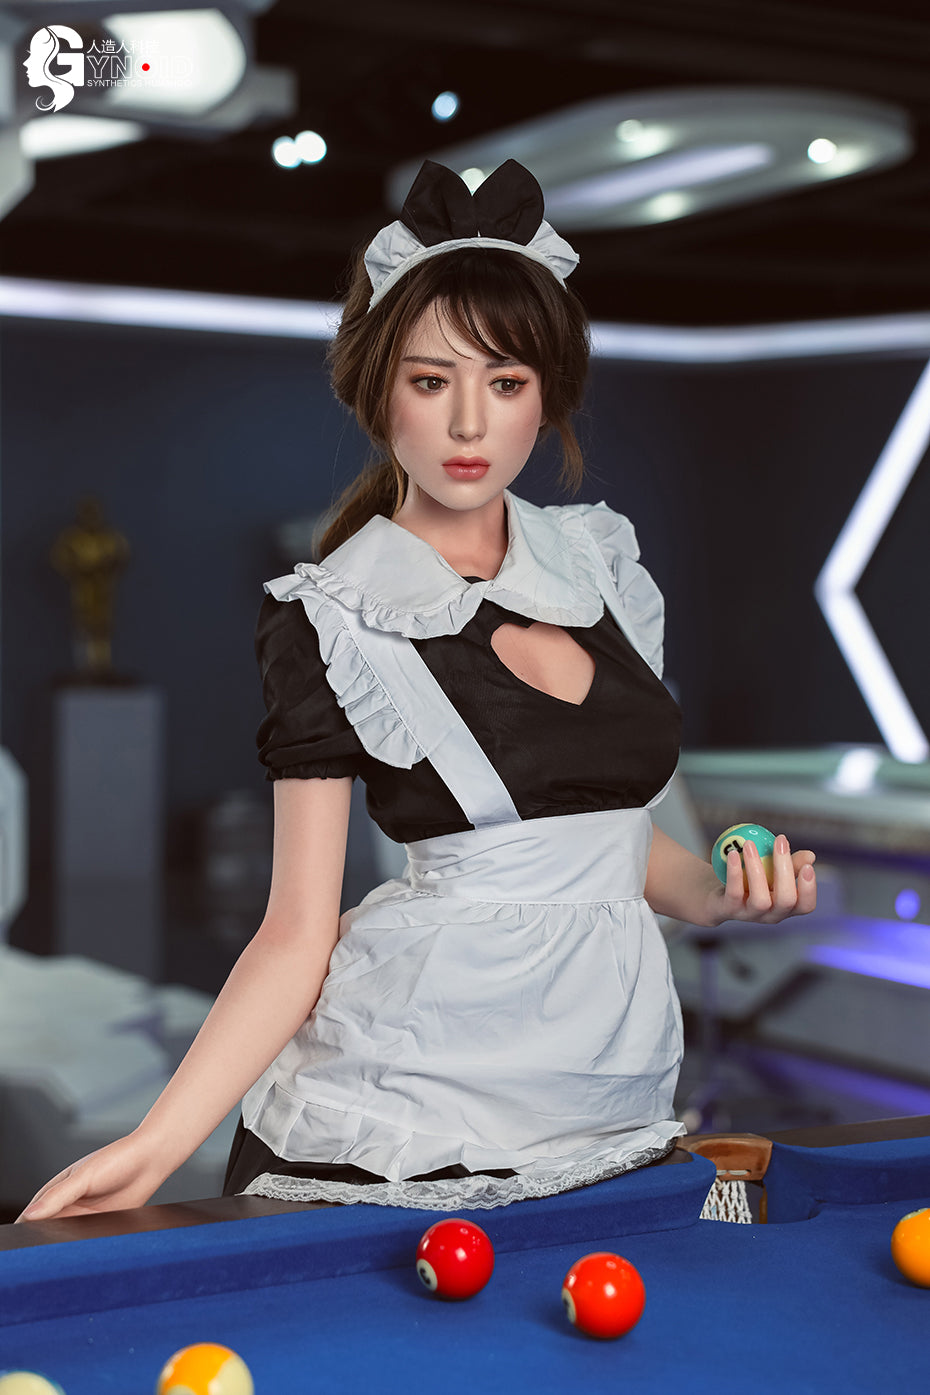 Gynoid Doll 170 cm Silicone - Lisa | Sex Dolls SG